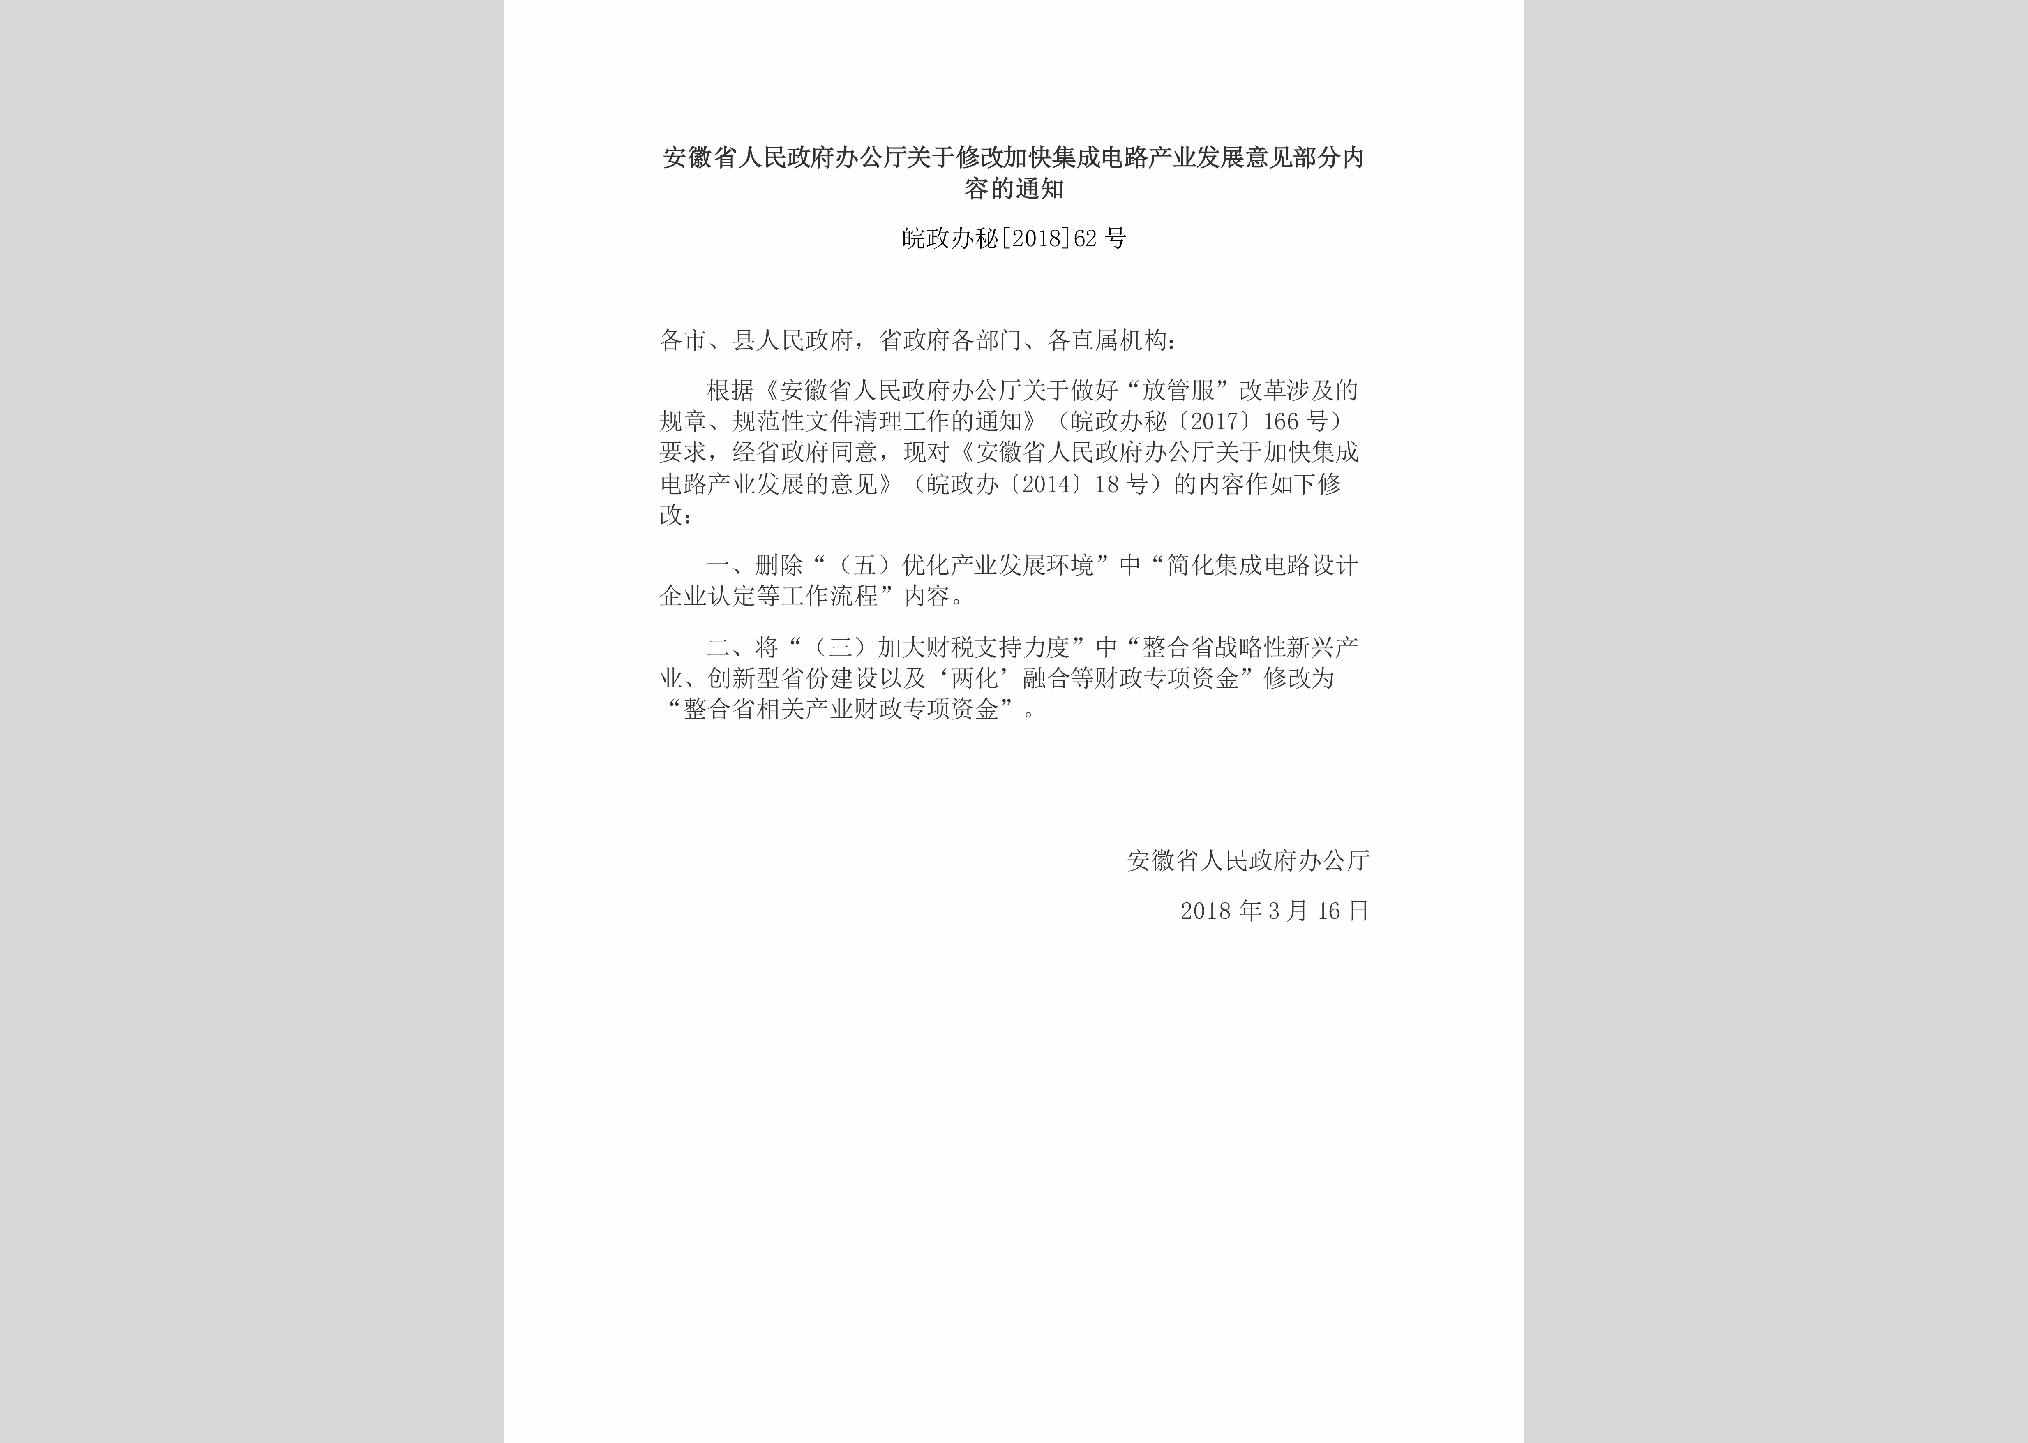 皖政办秘[2018]62号：安徽省人民政府办公厅关于修改加快集成电路产业发展意见部分内容的通知